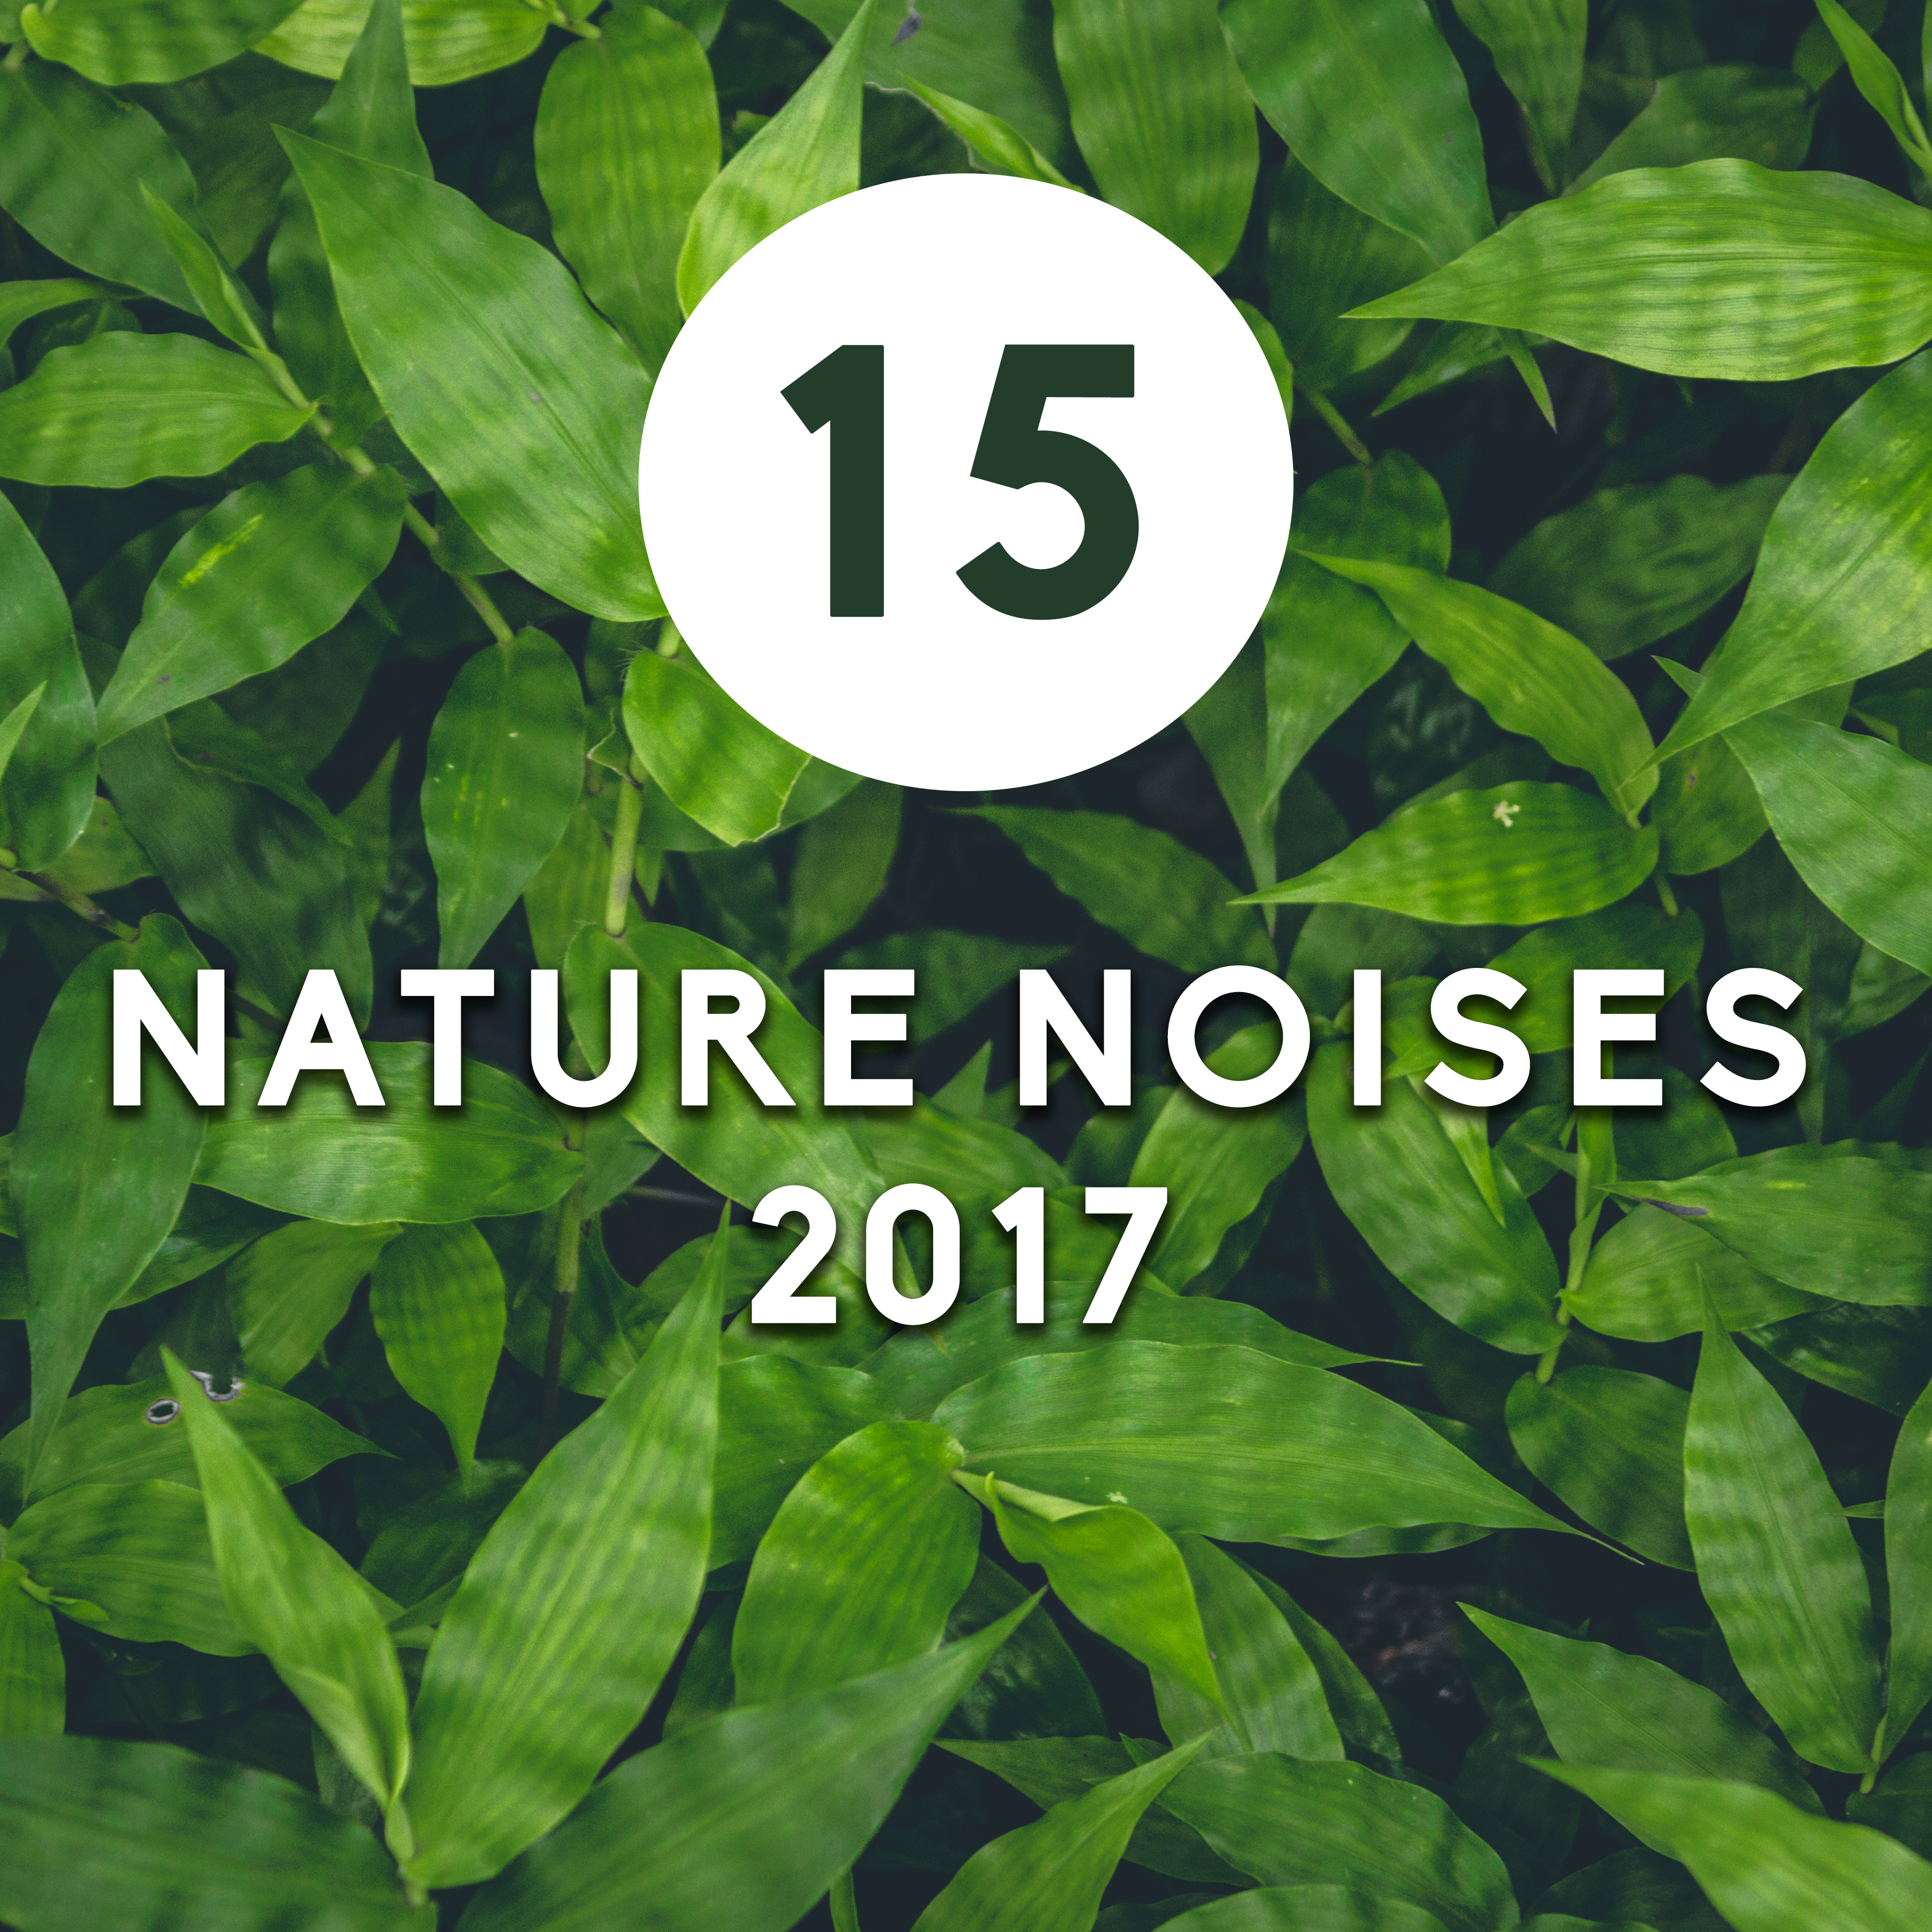 15 Nature Noises 2017